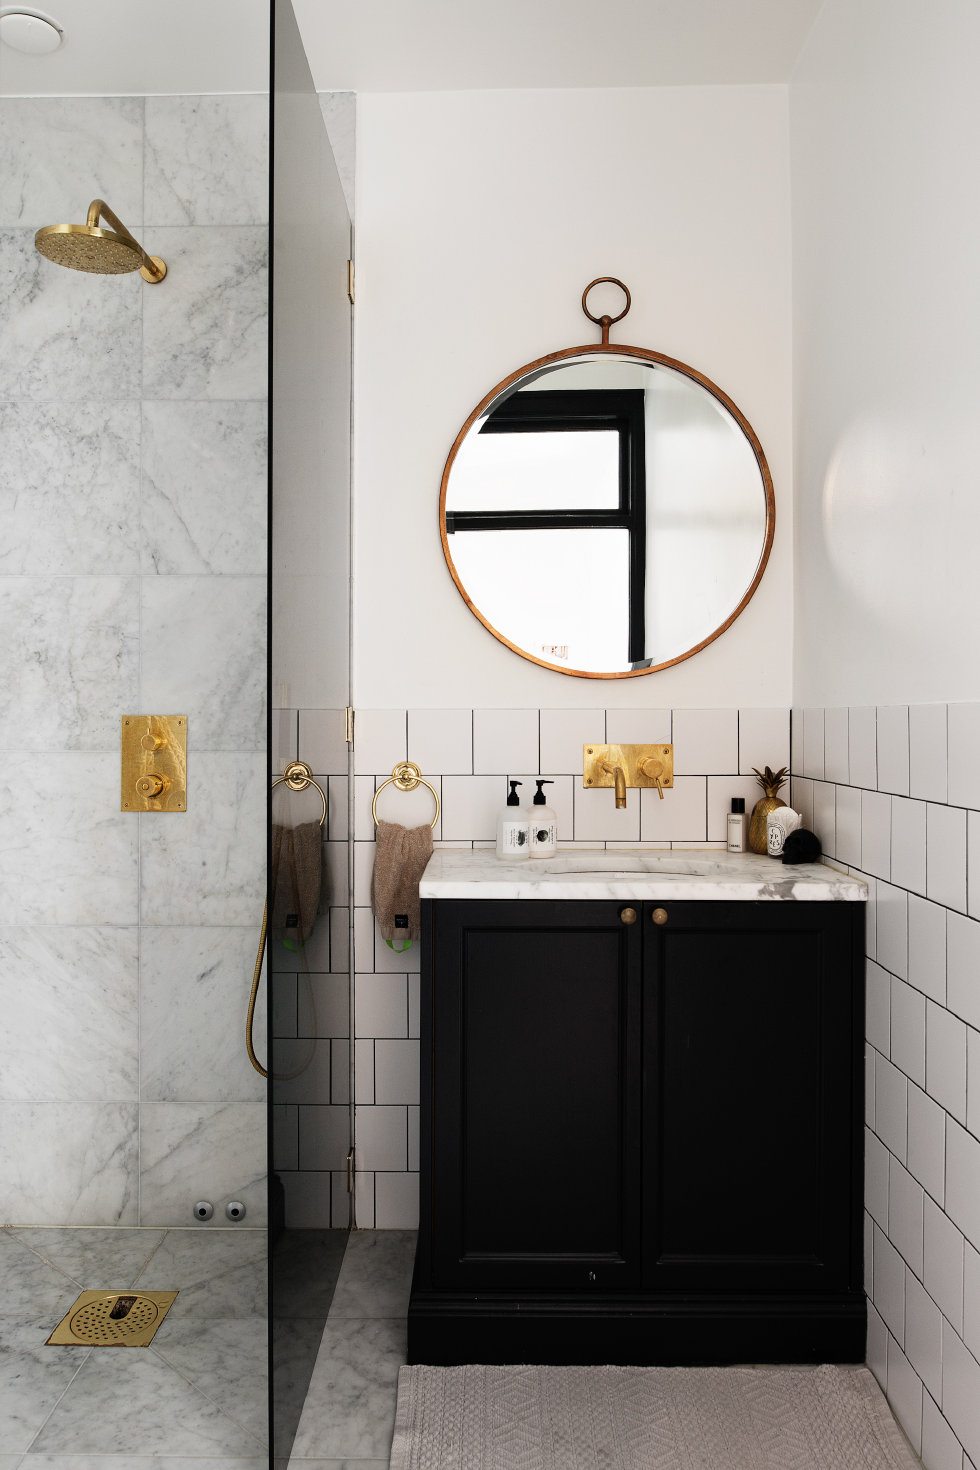 Deze kleine chique klassieke badkamer is ingericht met hele stijlvolle details. Klik hier voor meer foto's.